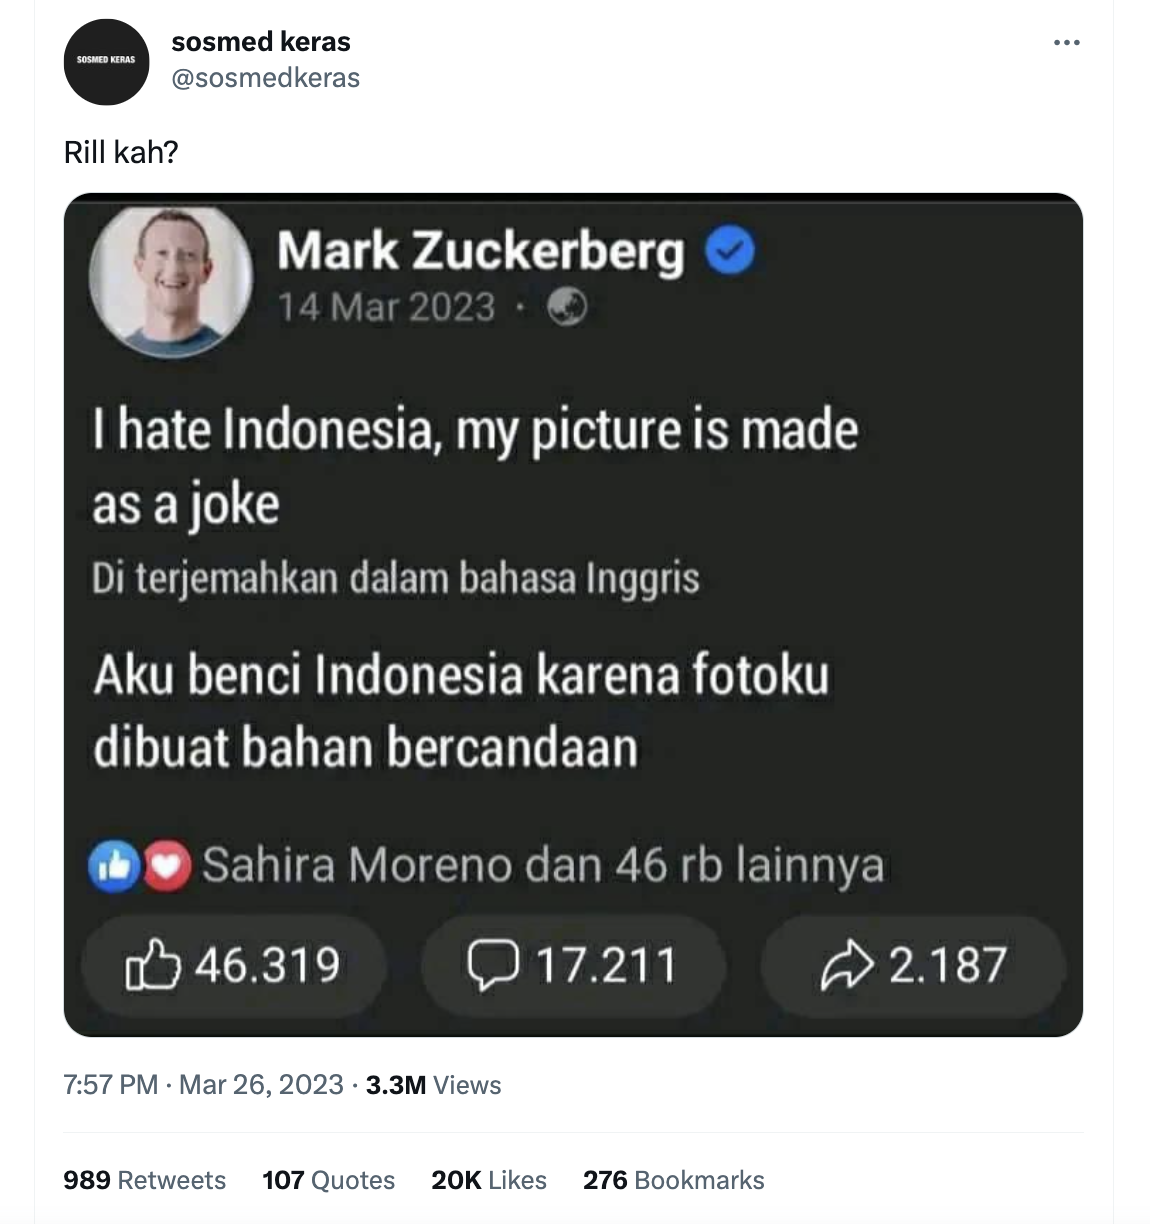 [Cek Fakta] Mark Zuckerberg Benci Indonesia karena Fotonya Sering Dijadikan Bahan Candaan?